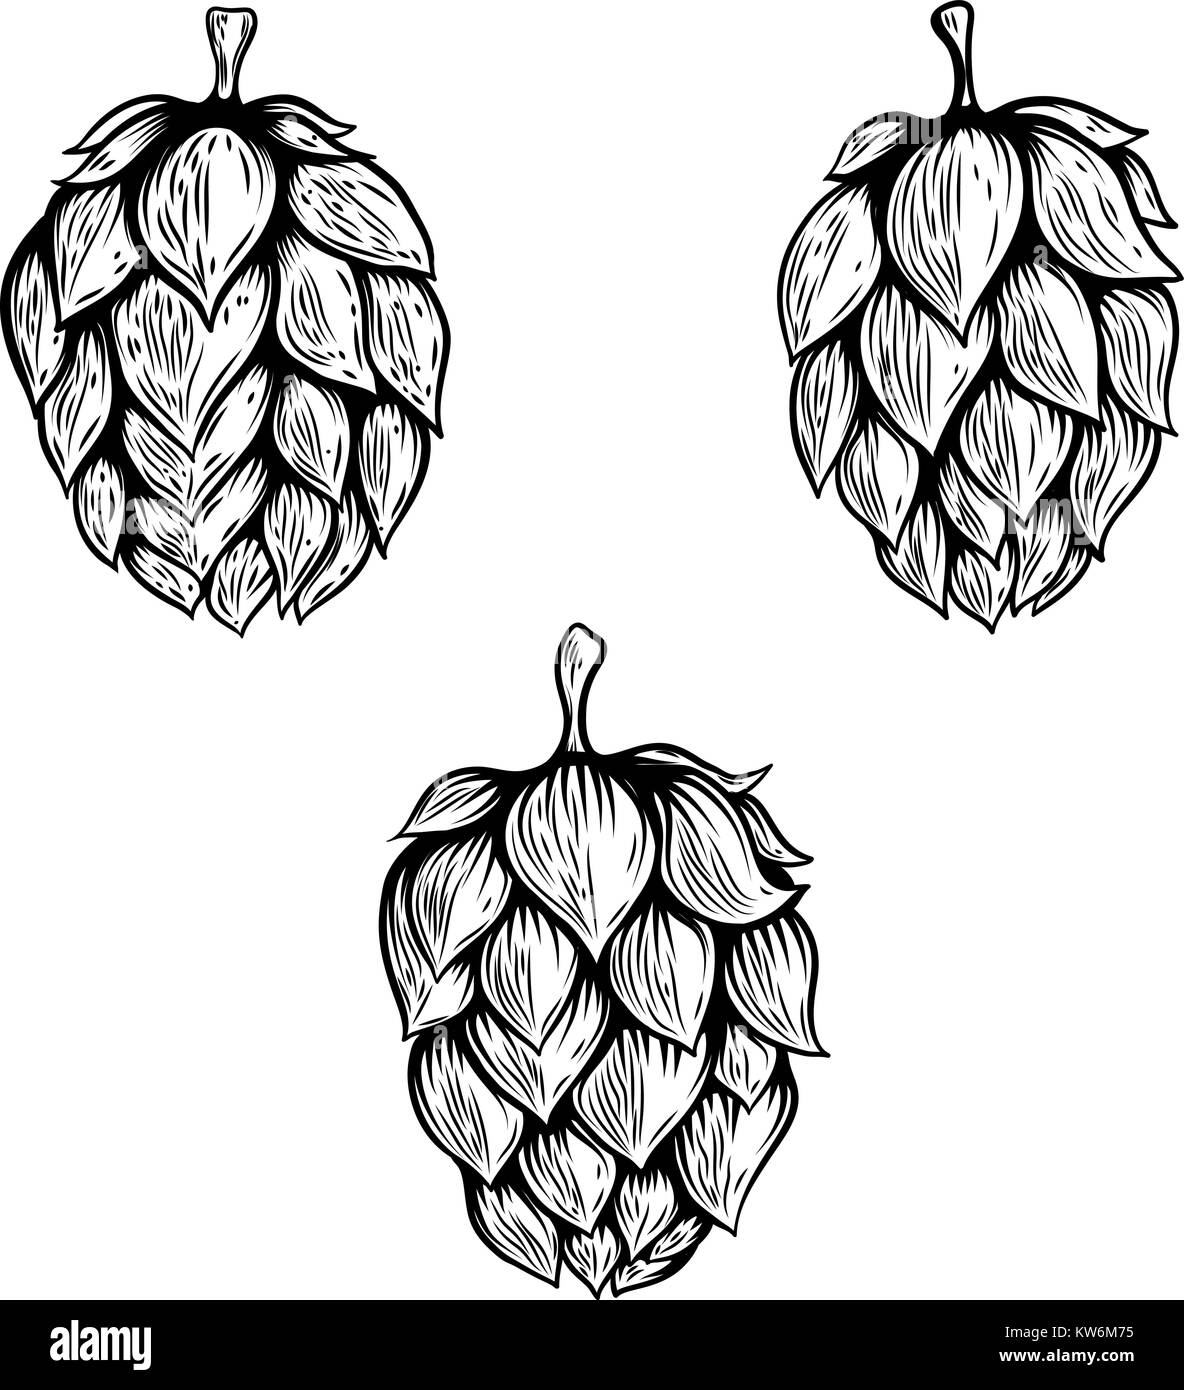 Set of hand drawn beer hop illustrations. Design element for logo, label, emblem, sign. Vector illustration Stock Vector